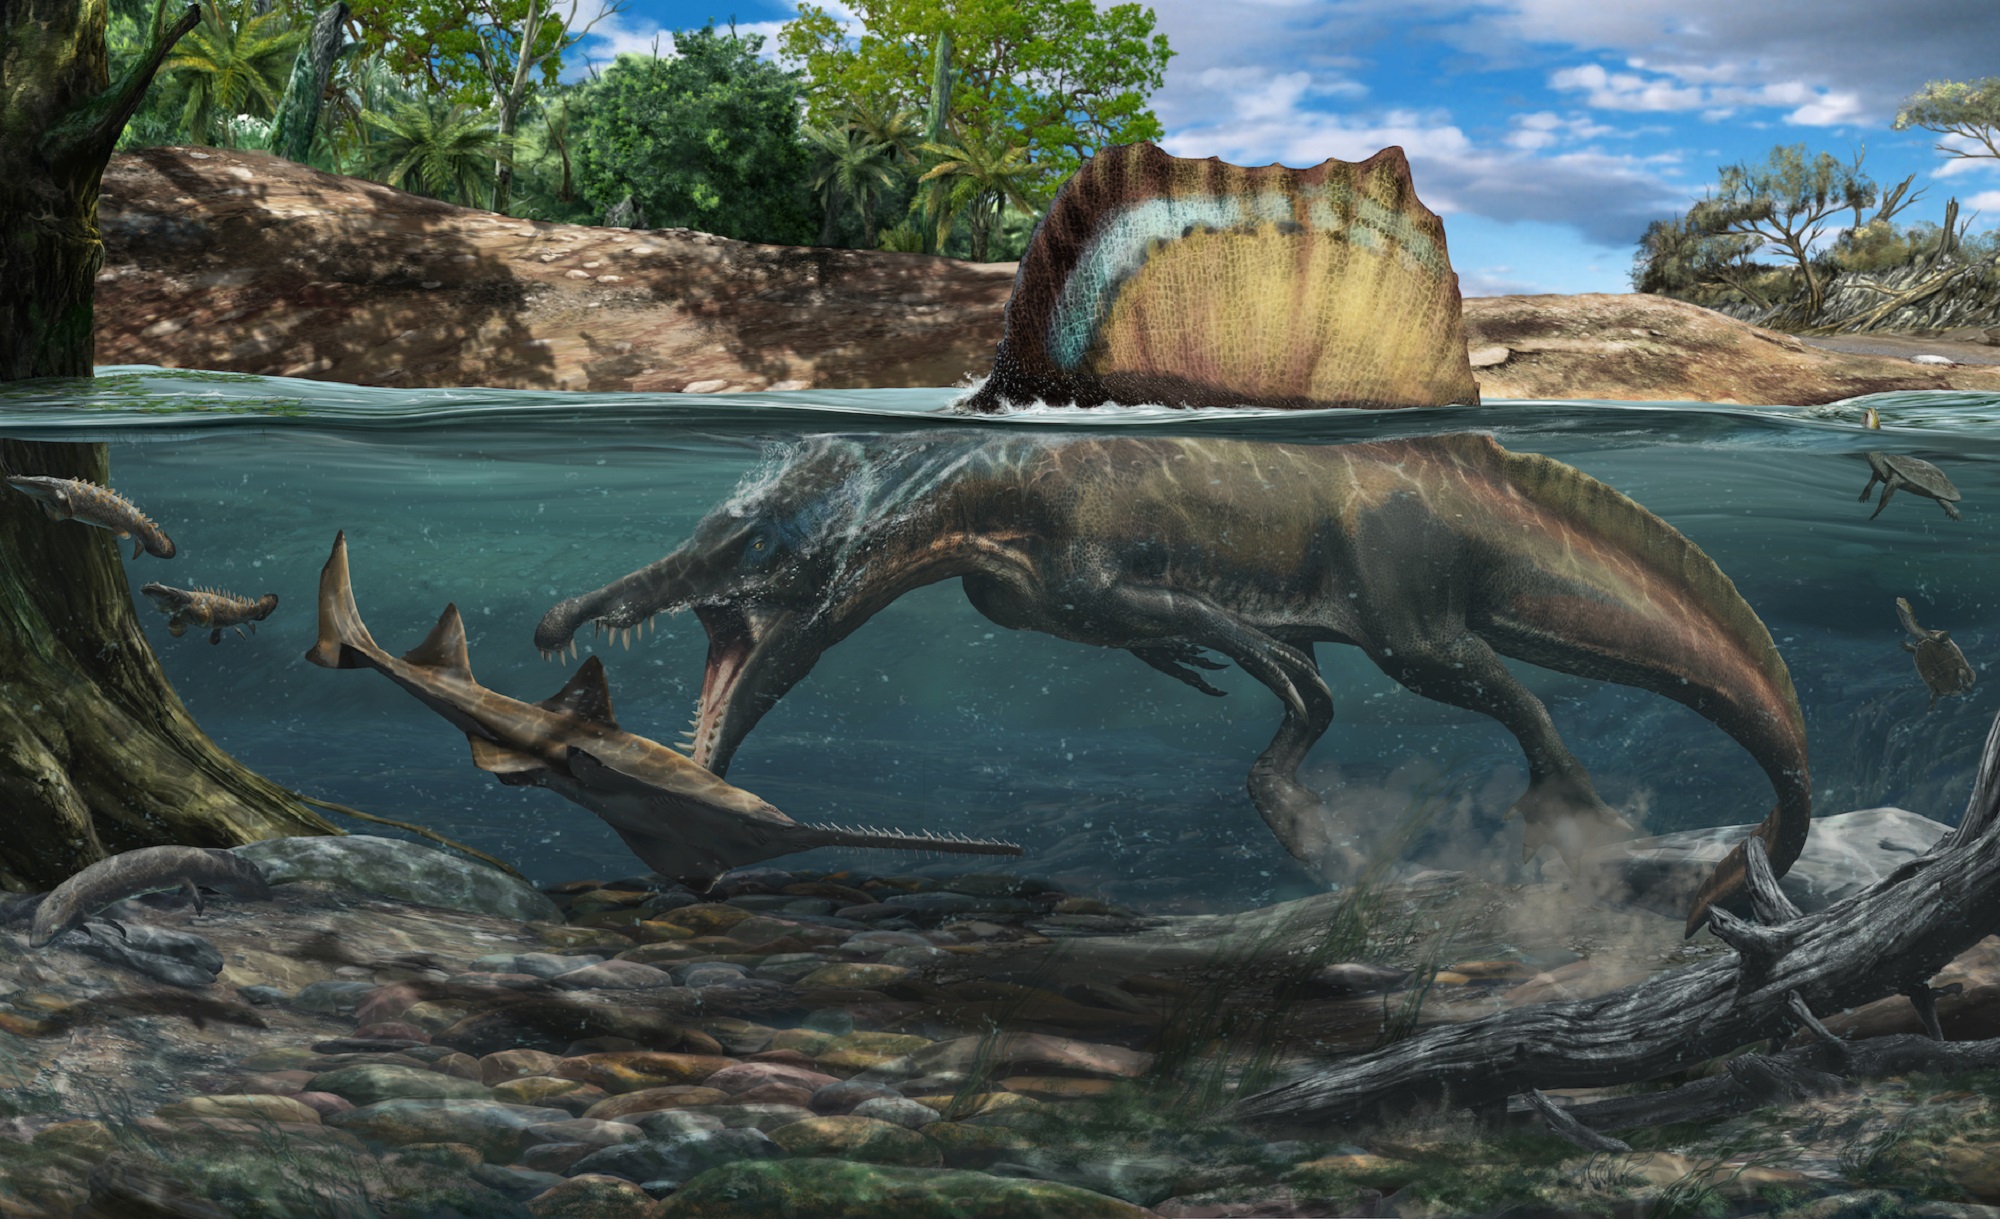 onderwerpen Overeenstemming Tenslotte Spinosaurus had bones built for swimming | Popular Science